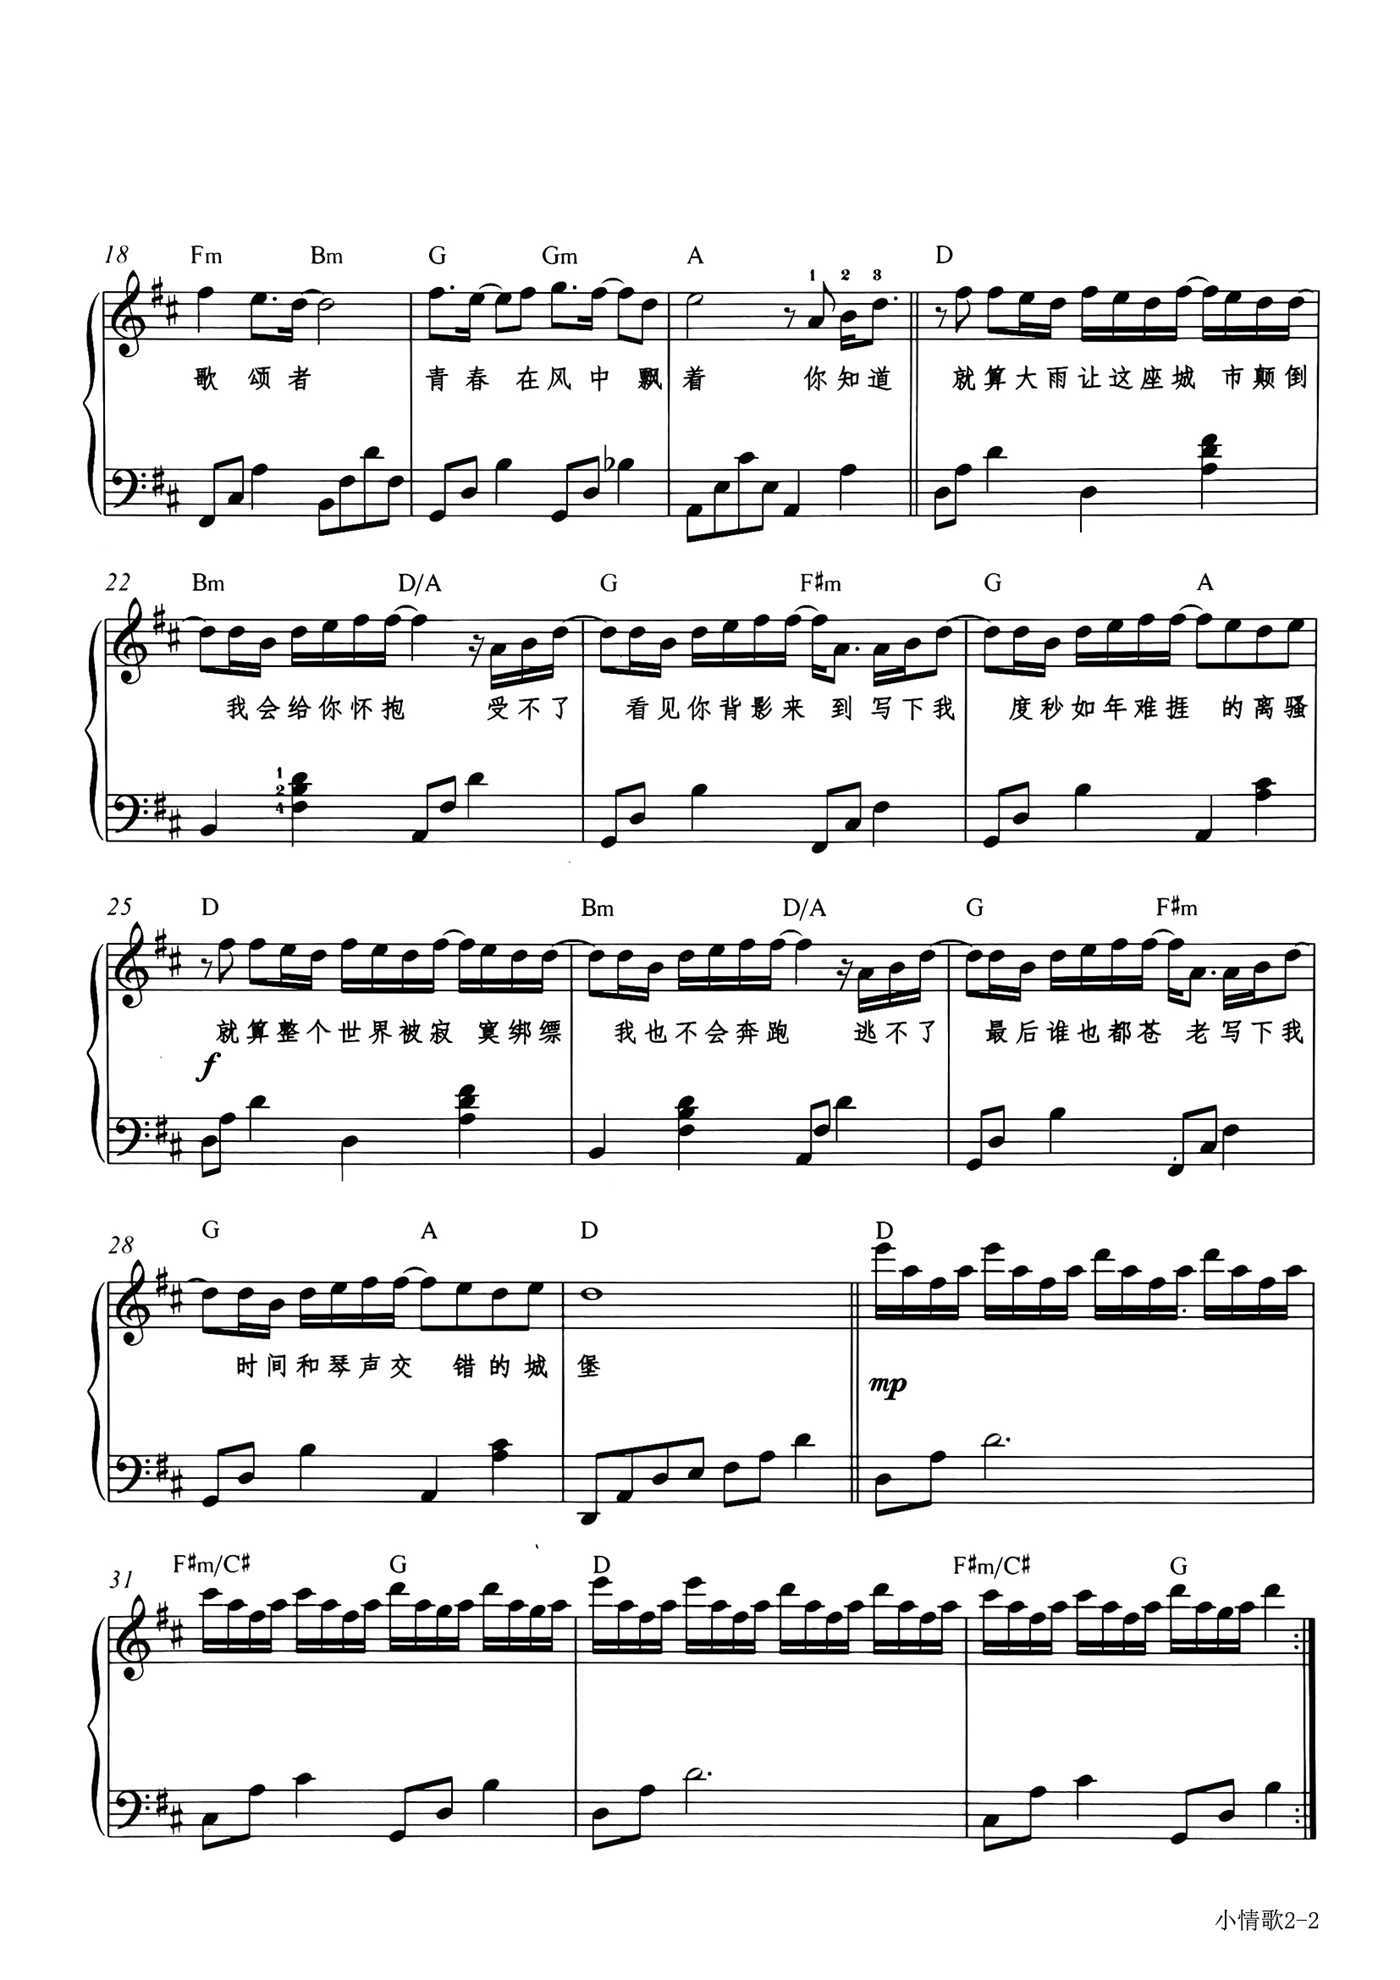 简易版《燕窝》钢琴谱 - 吴青峰C调简谱版 - 入门完整版曲谱 - 钢琴简谱